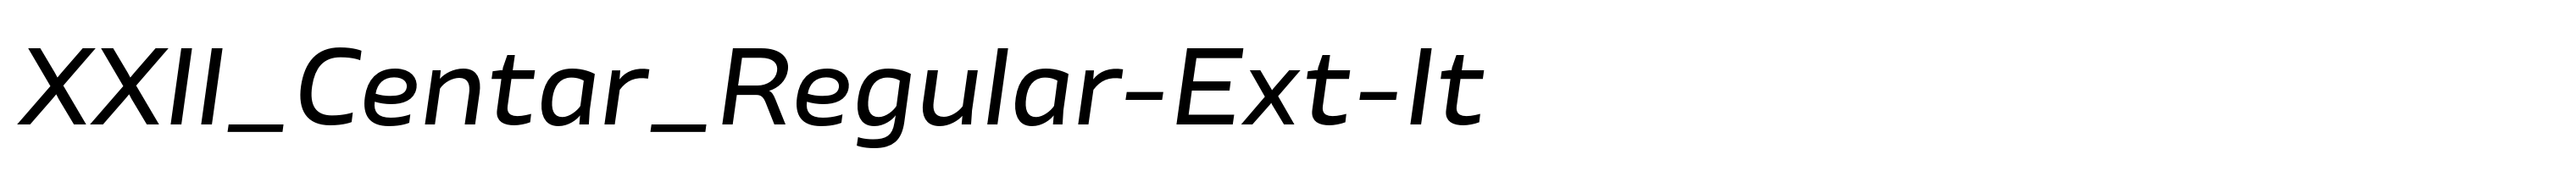 XXII_Centar_Regular-Ext-It